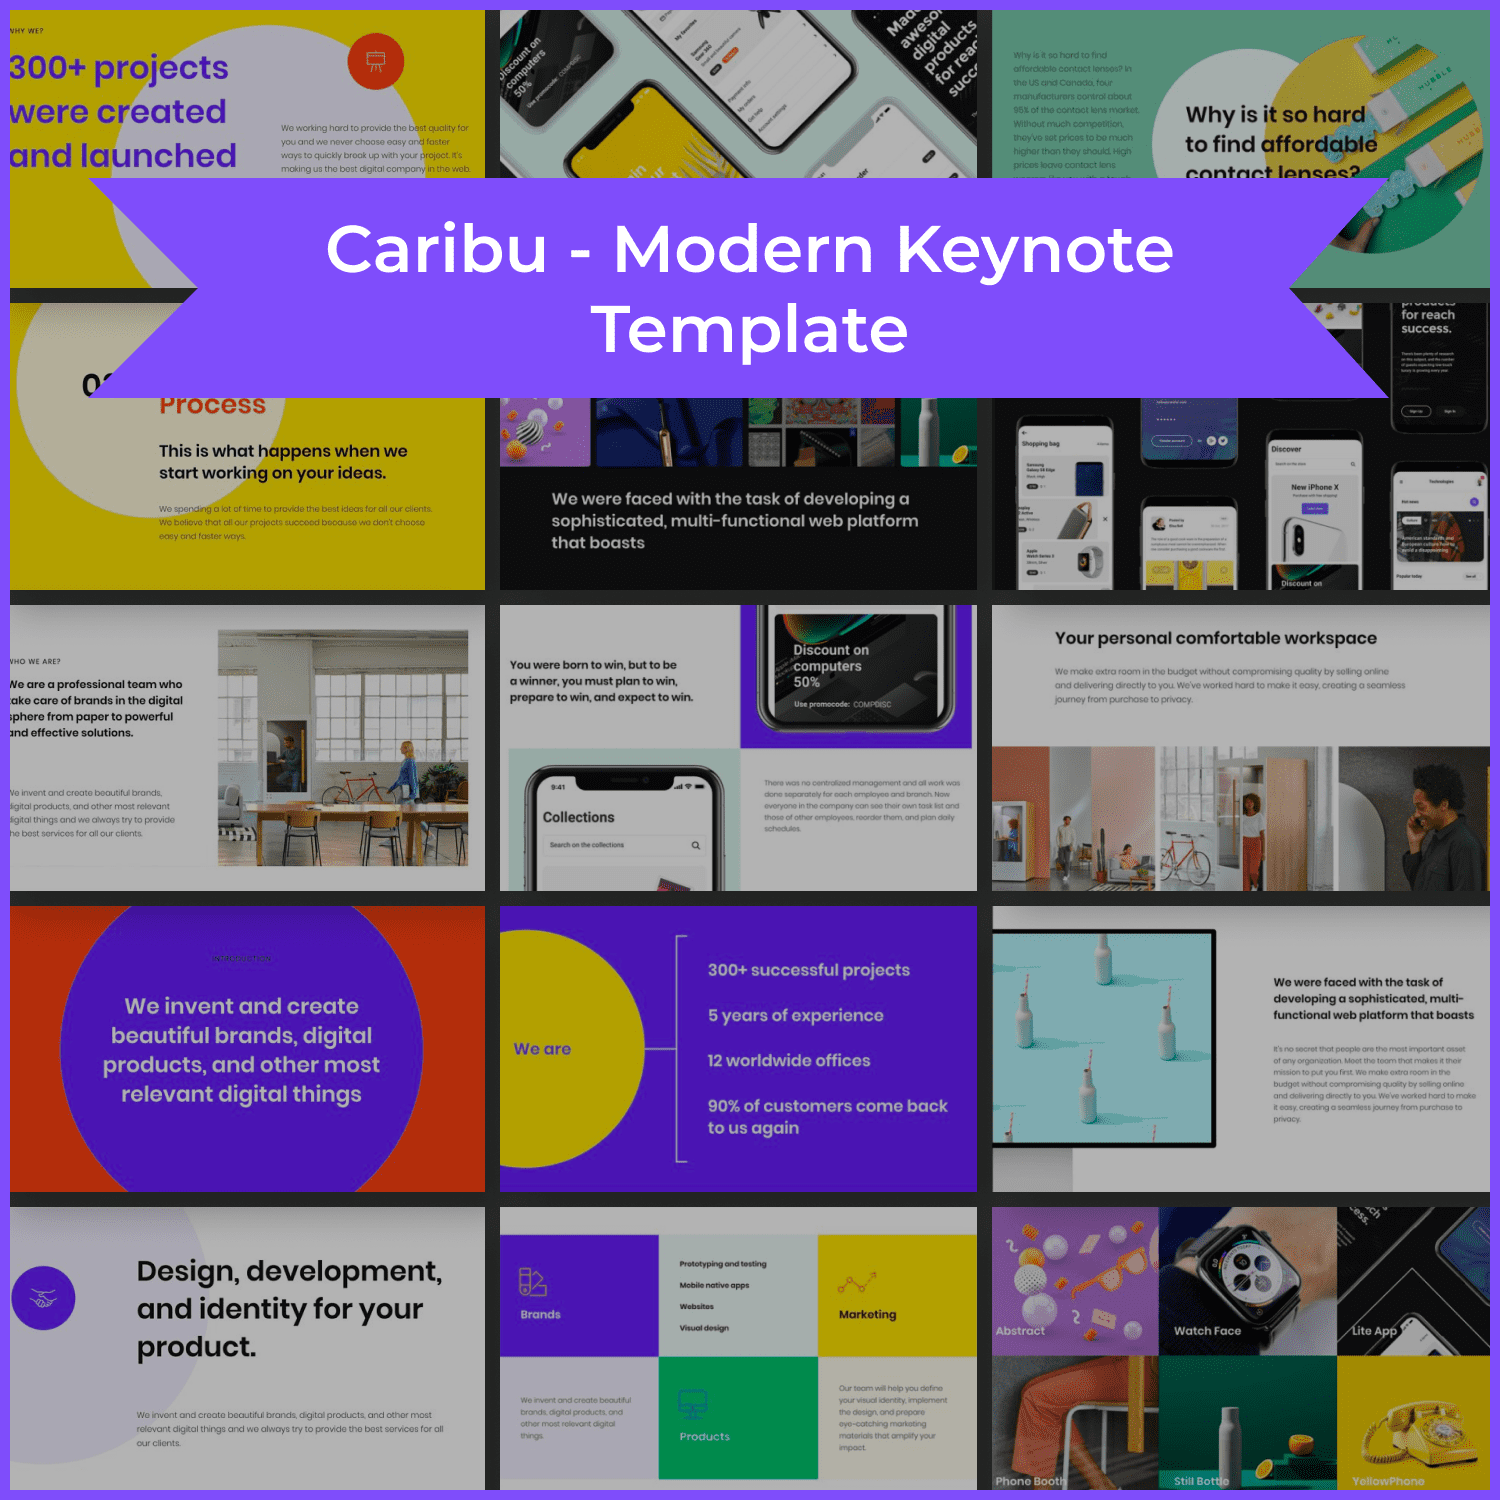 Caribu - Modern Keynote Template main cover.